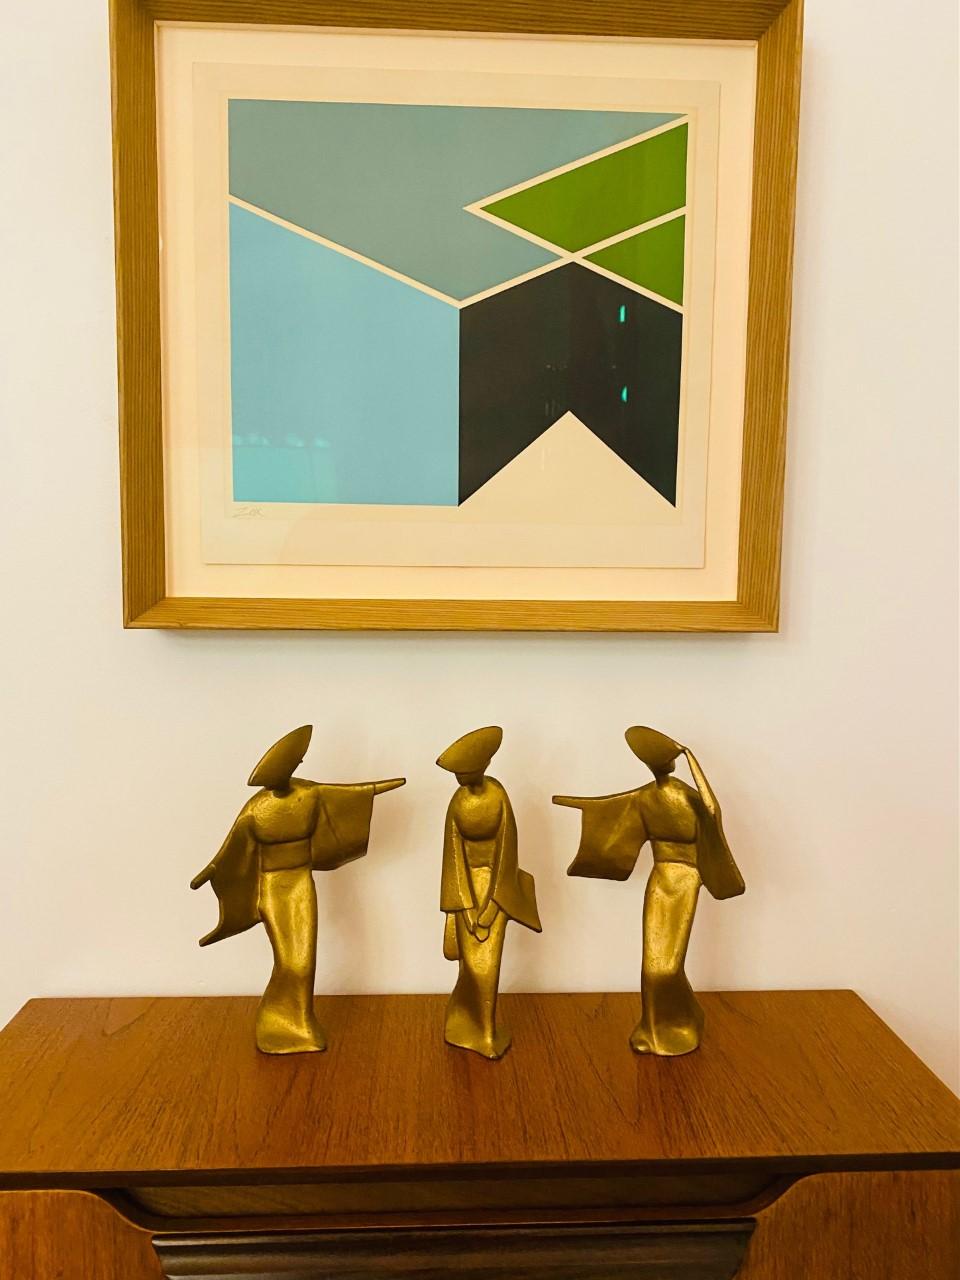 Bel ensemble de 3 danseuses en bronze. Ce groupe de trois grandes figurines présente des lignes gracieuses et une belle finition dorée et patinée. Vers 1970. Ces figures abstraites à la patine dorée bariolée représentent des danseuses japonaises Awa